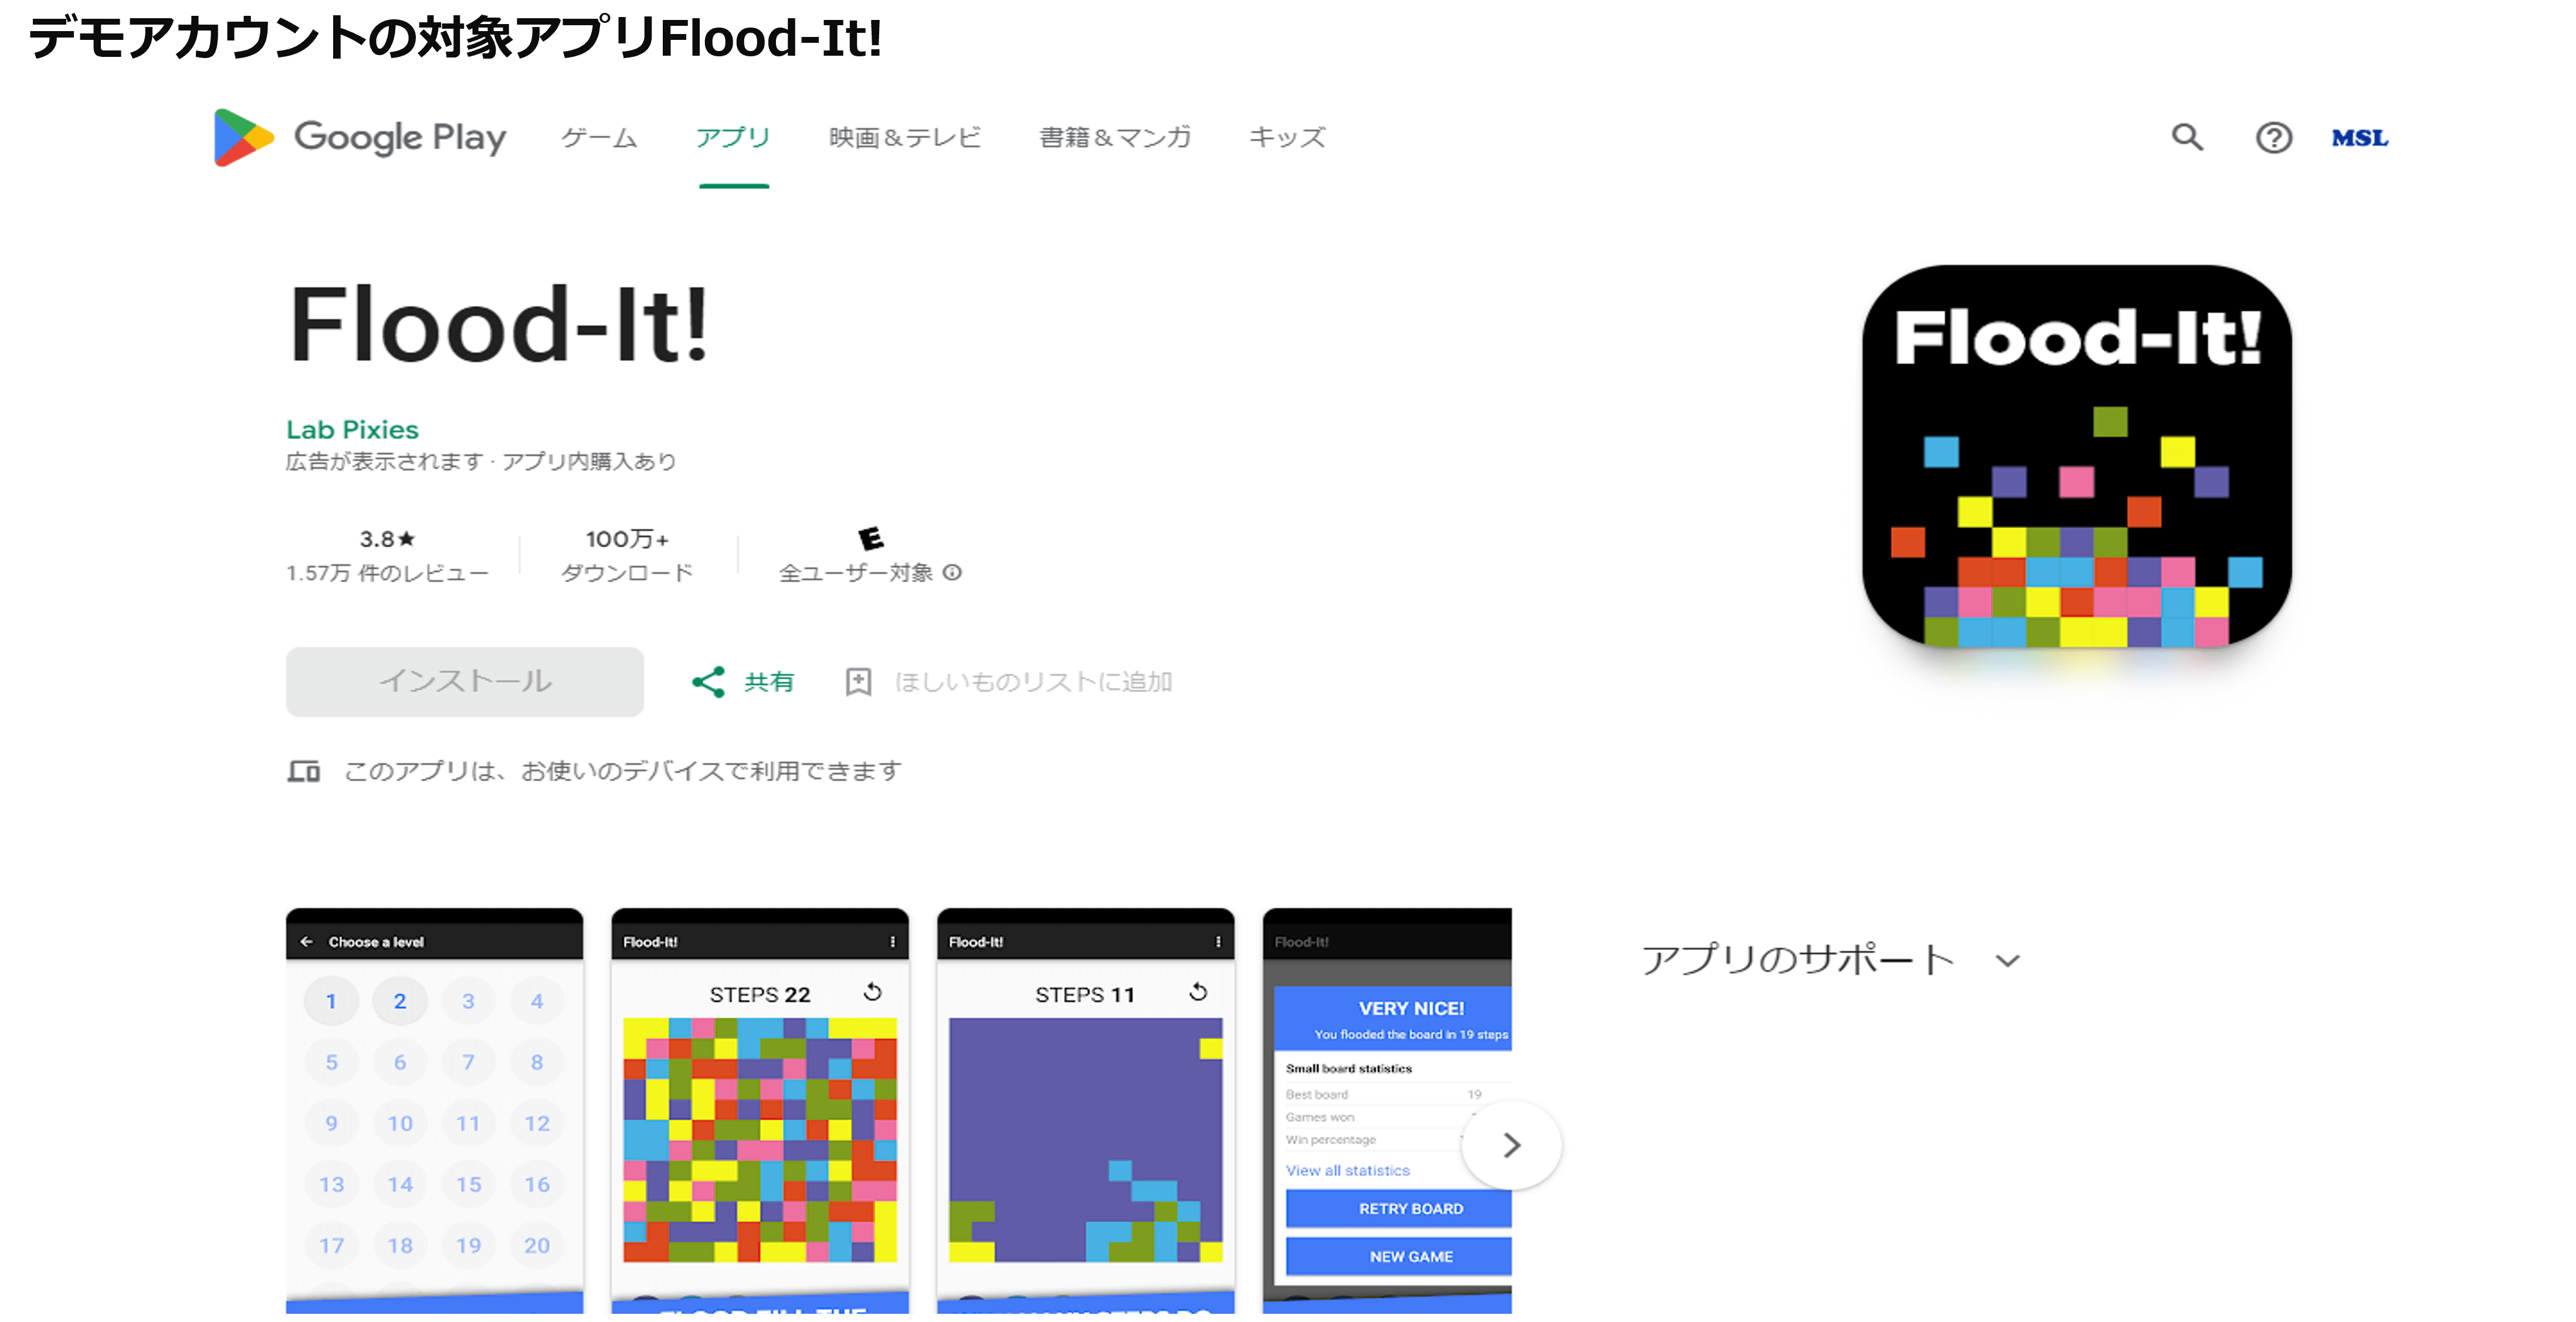 デモアカウントの対象アプリFlood-It!